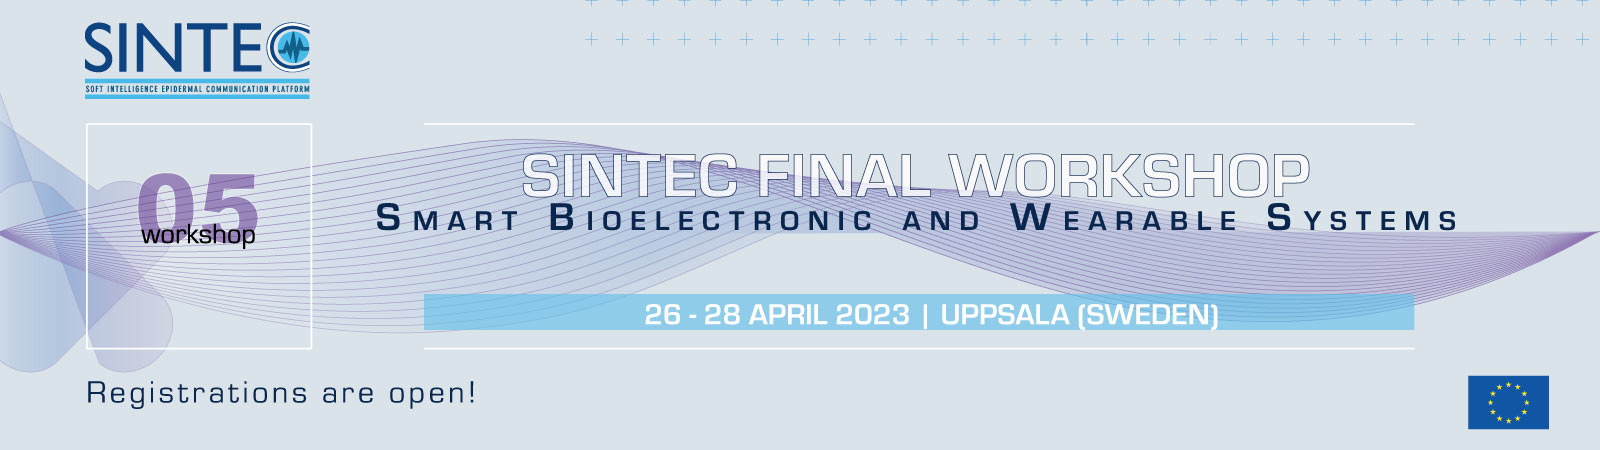 sintec_final_workshop_event_slider